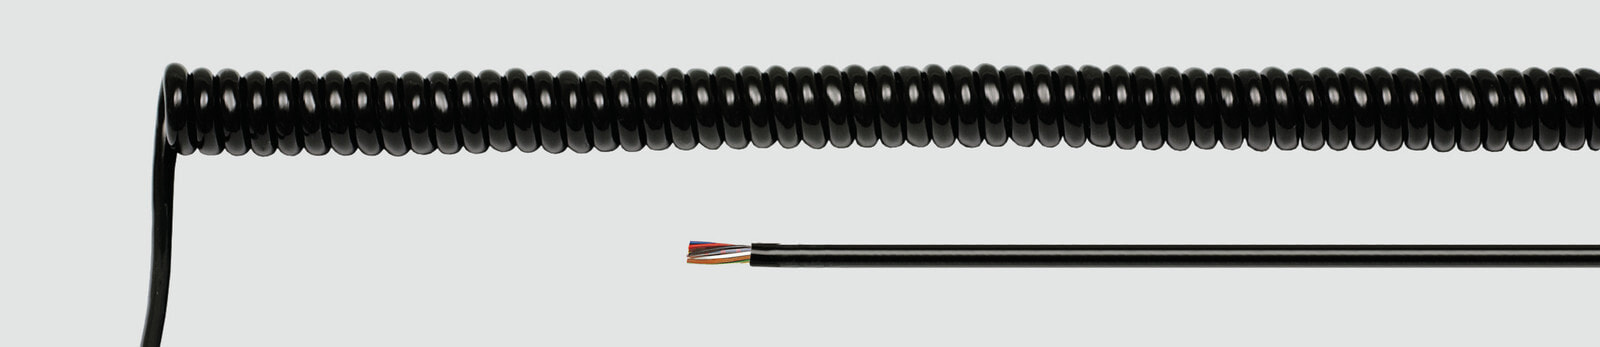 Helukabel 85779 - Low voltage cable - Black - Cooper - 0.5 mm² - 399.4 kg/km - 500 V